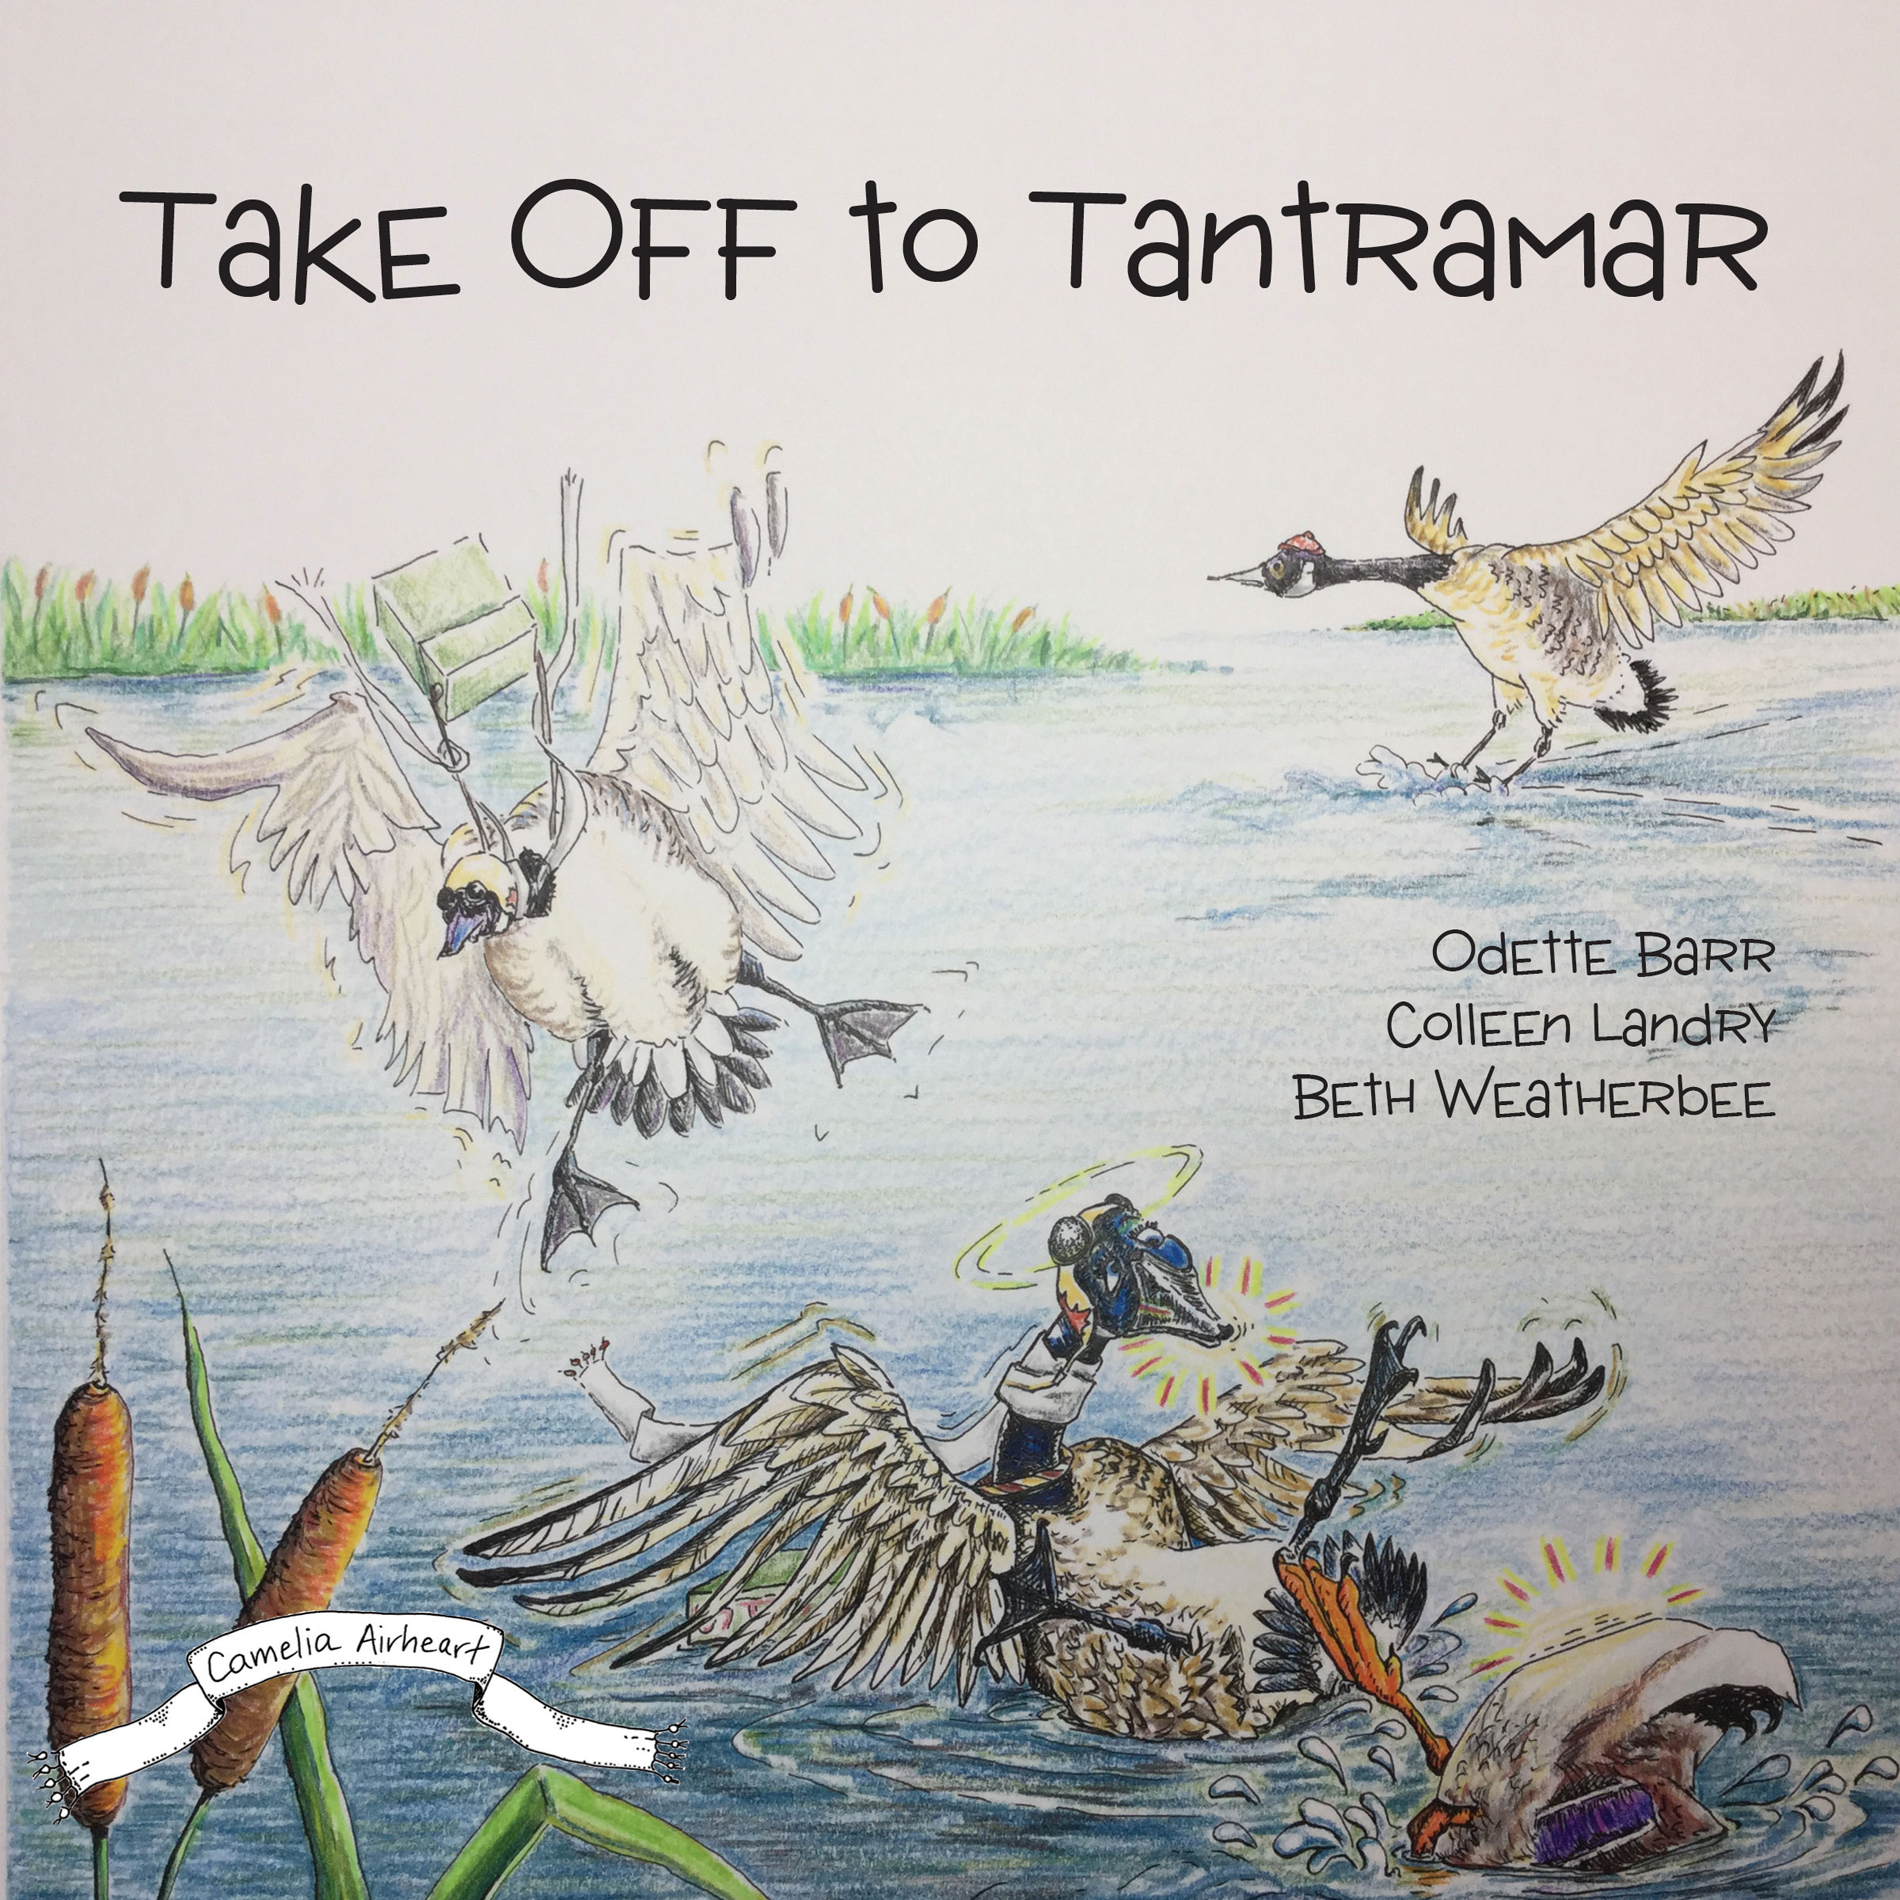 Take off to Tantramar